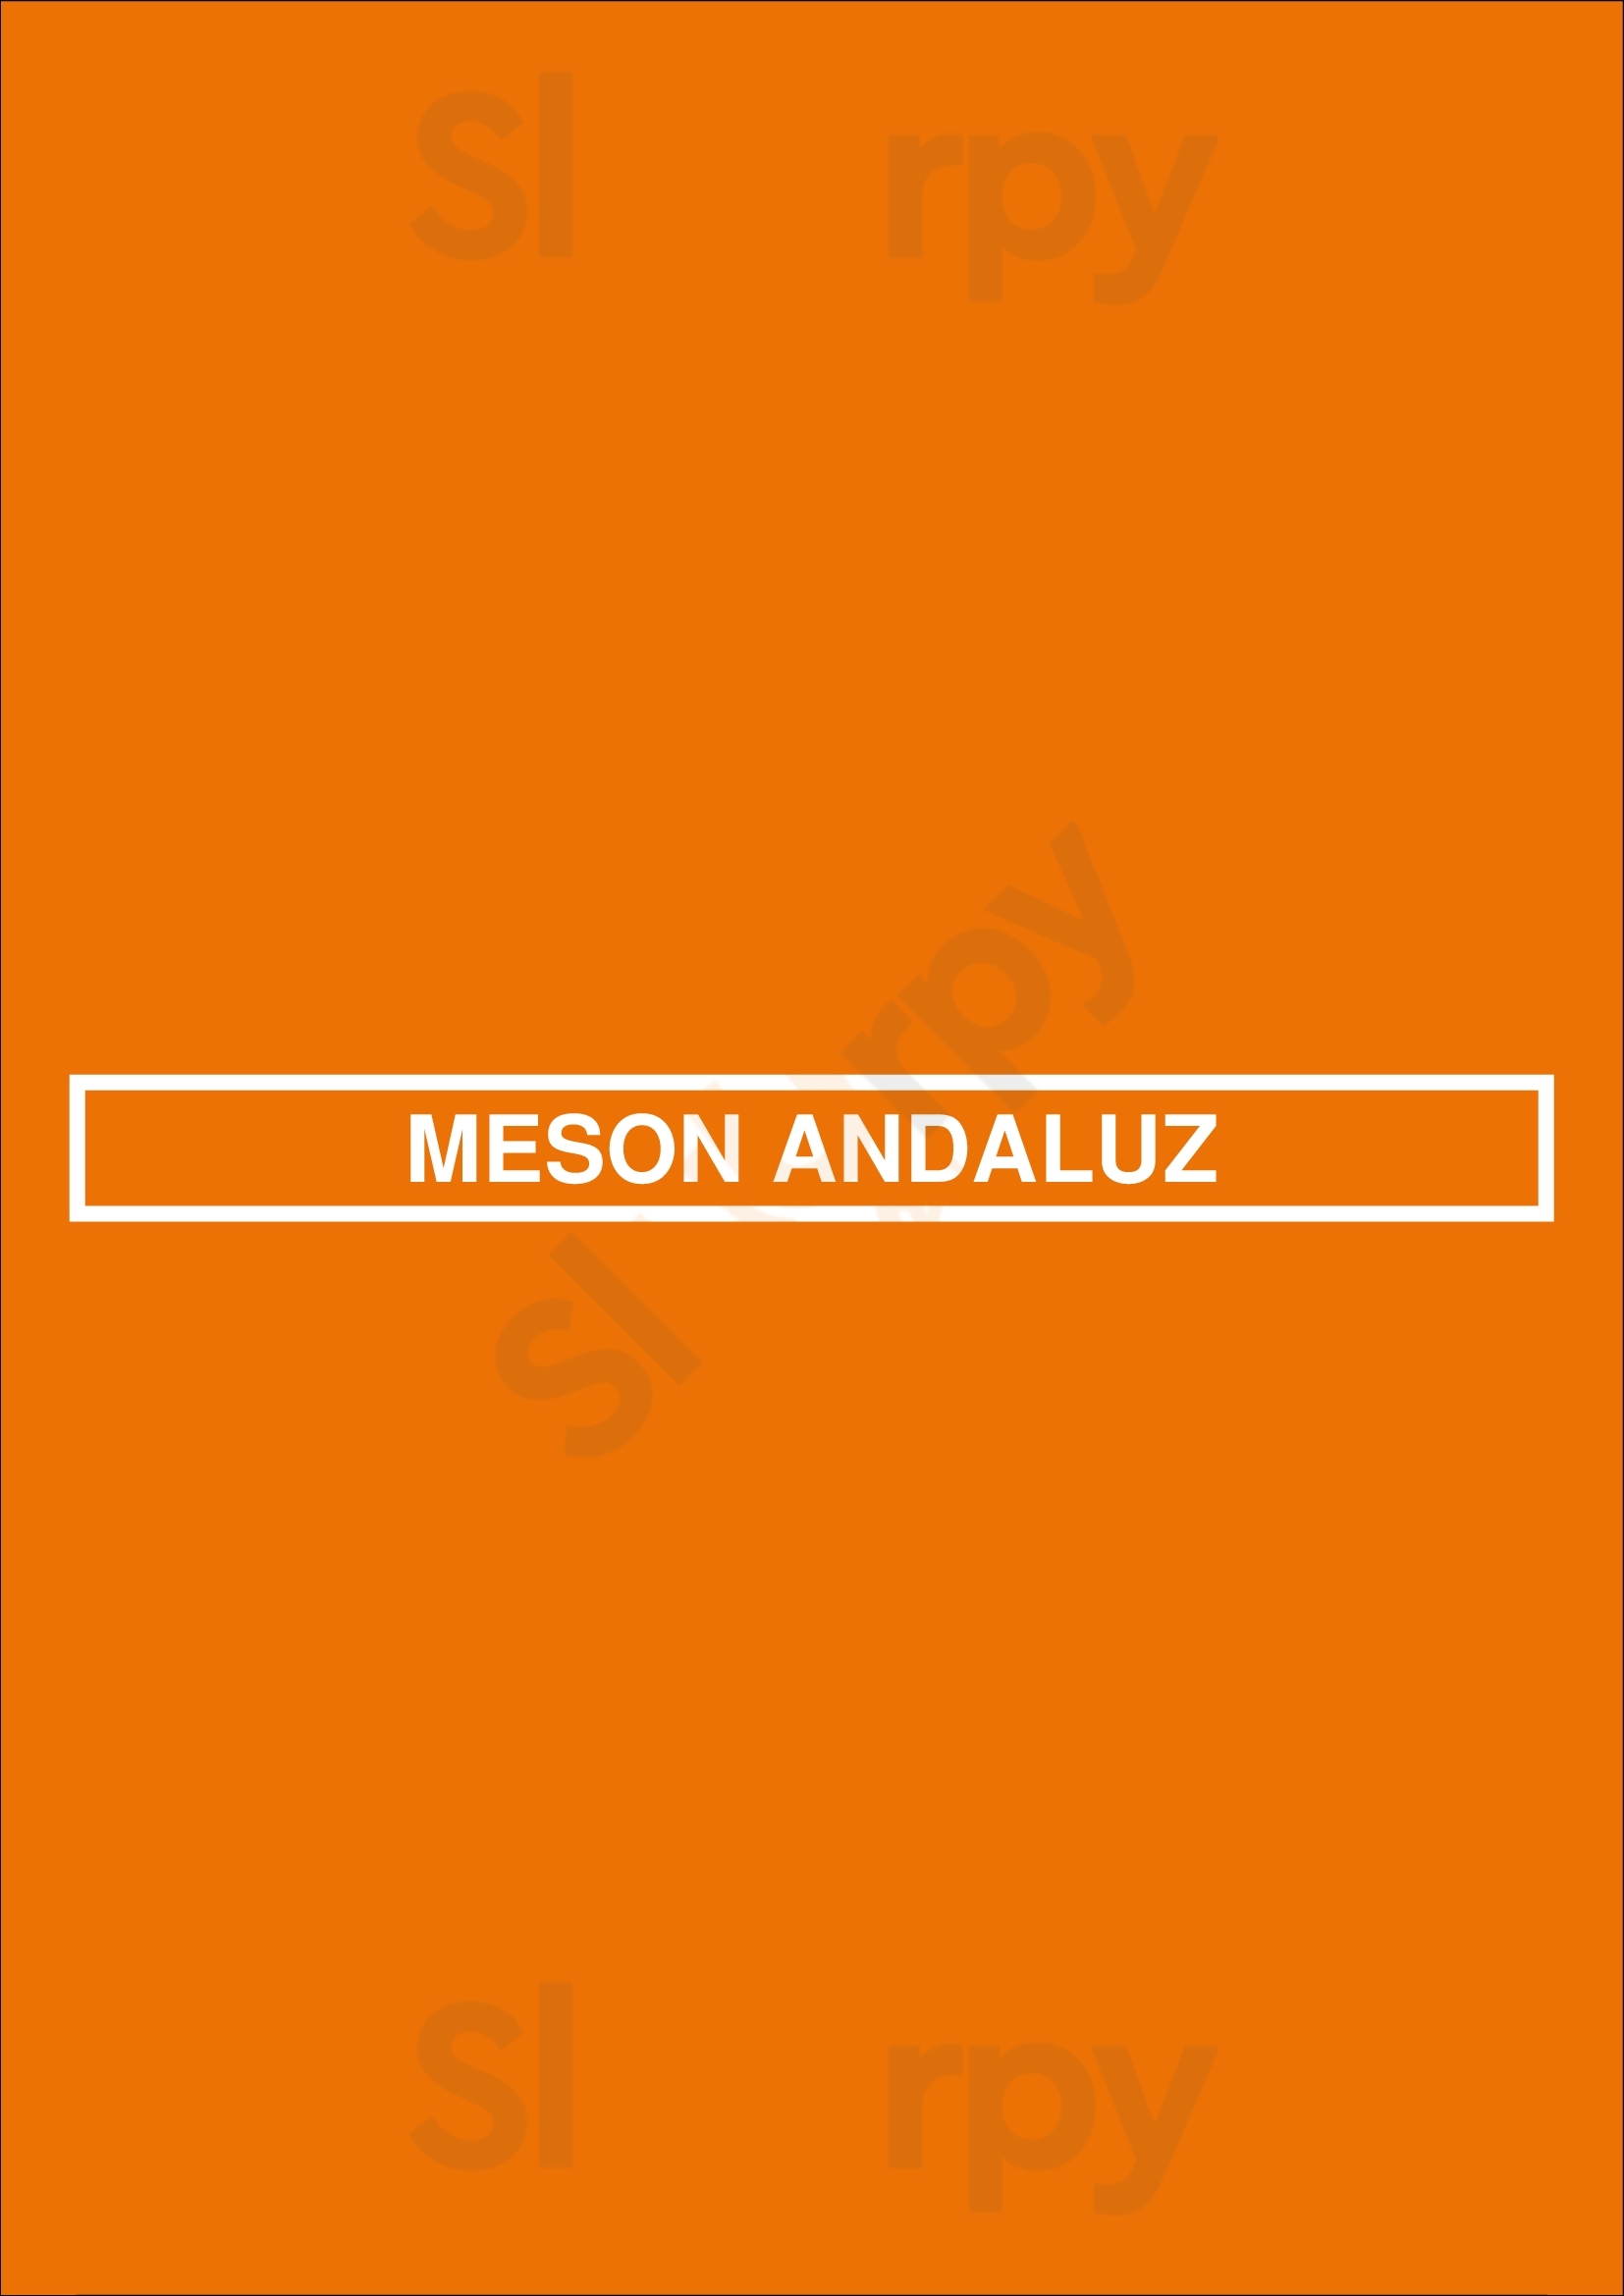 Meson Andaluz Lisboa Menu - 1